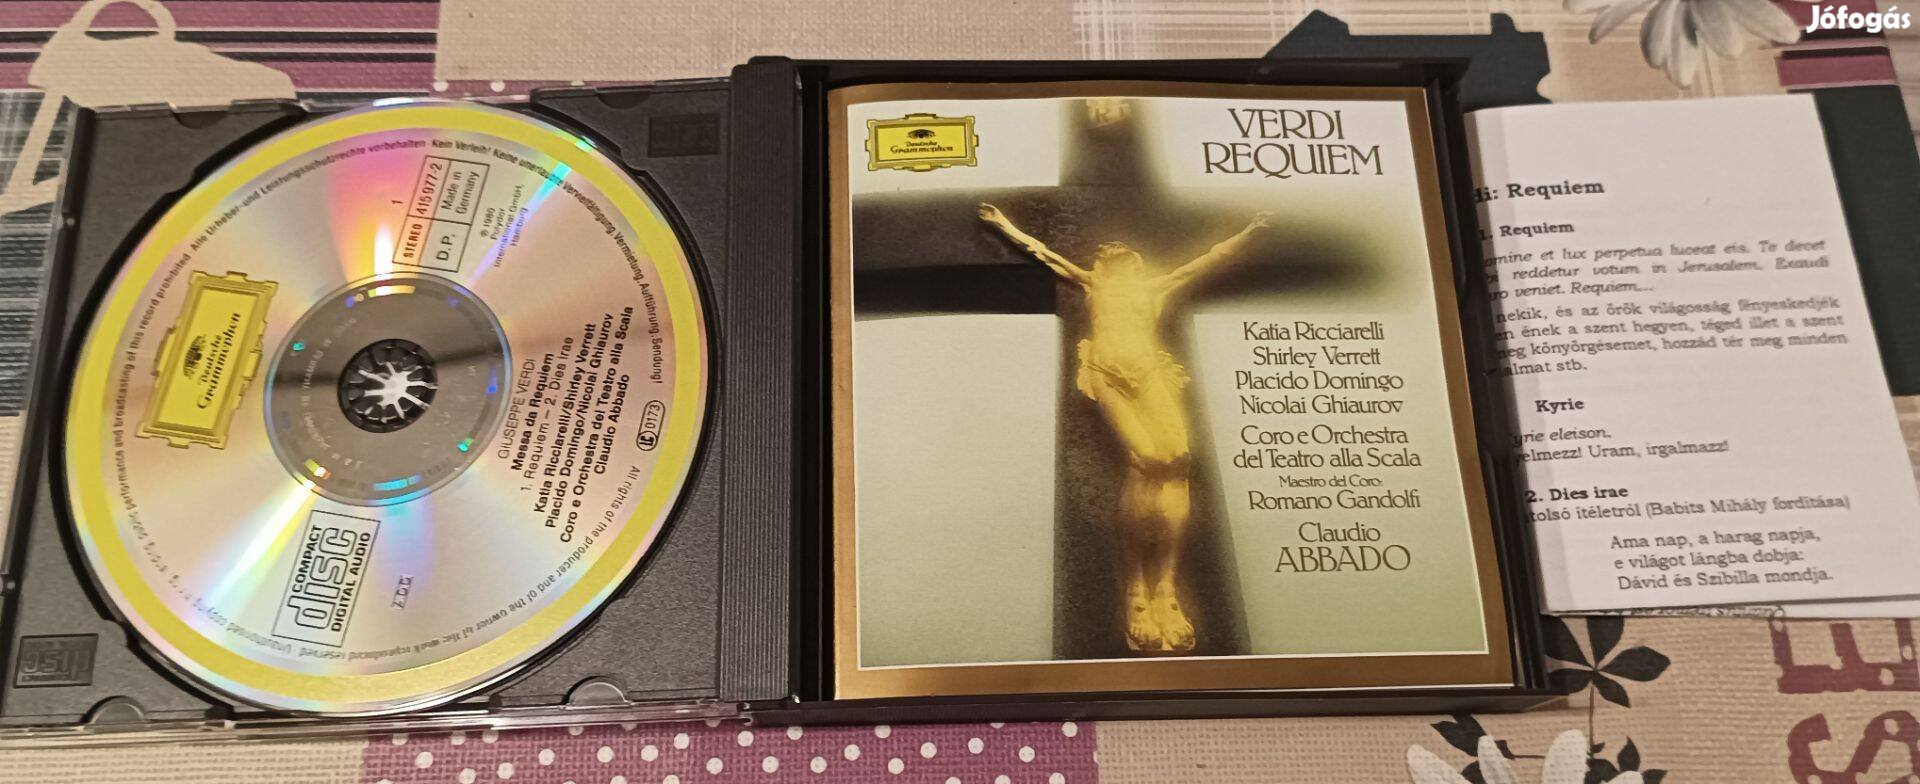 Verdi: requiem (Placido Domingo, Claudio Abbado) 1980 Polydor dupla CD